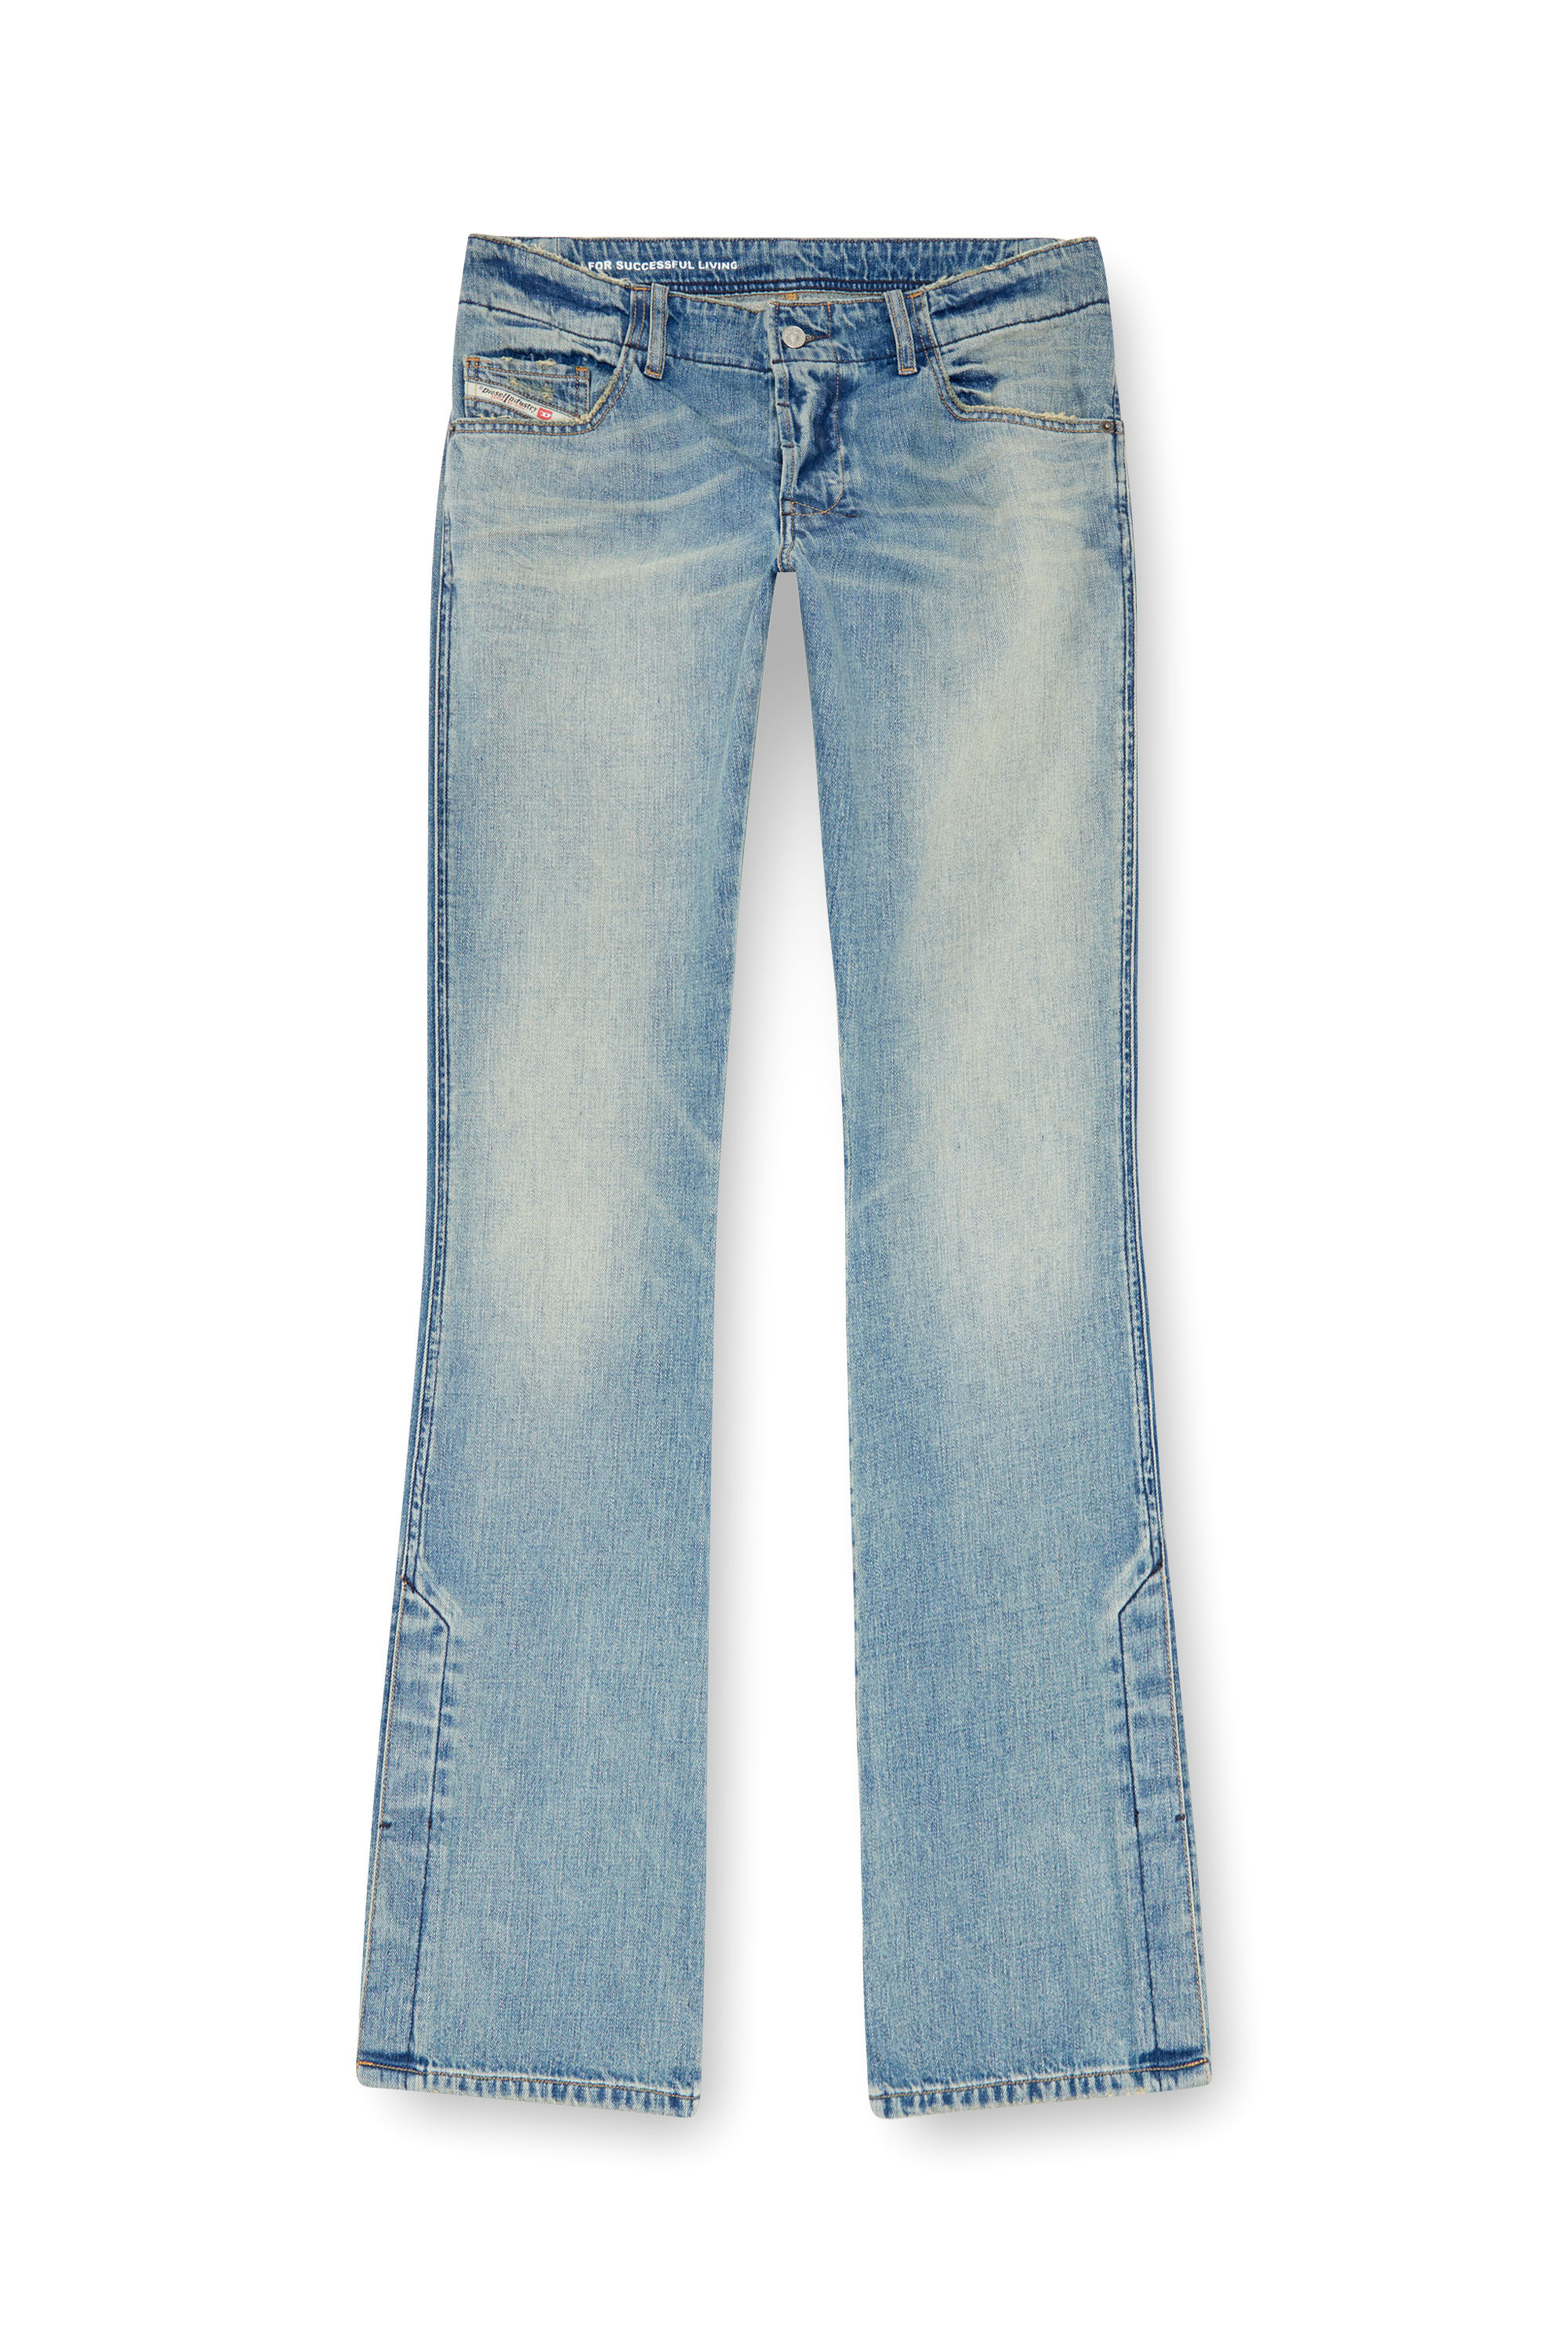 Diesel - Bootcut Jeans D-Backler 0GRDN, Hombre Bootcut Jeans - D-Backler in Azul marino - Image 5